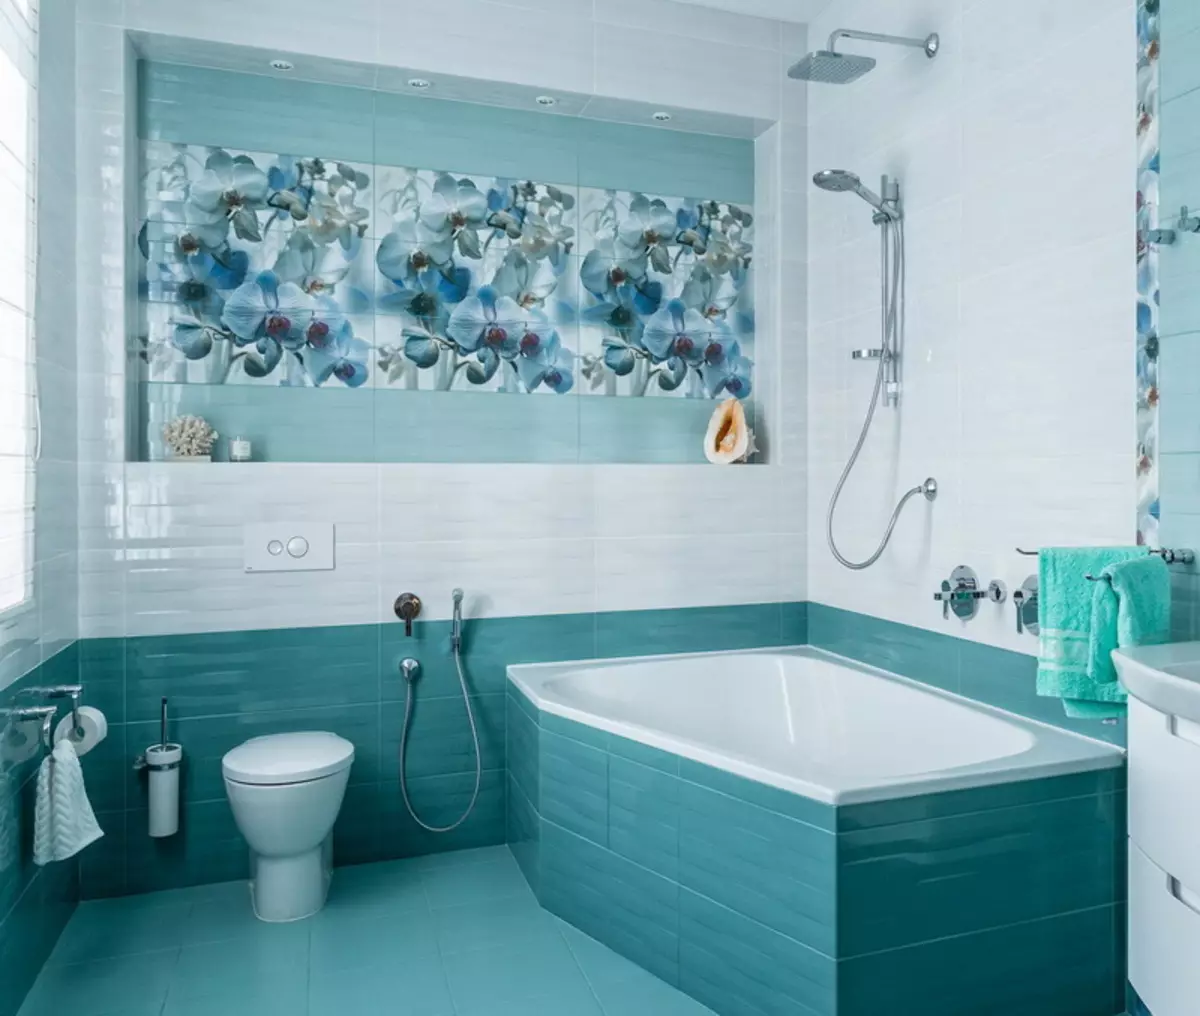 Baño turquesa (61 fotos): Ejemplos de diseño de baño en este color. Entendemos en colores, creamos un hermoso interior. 10203_41